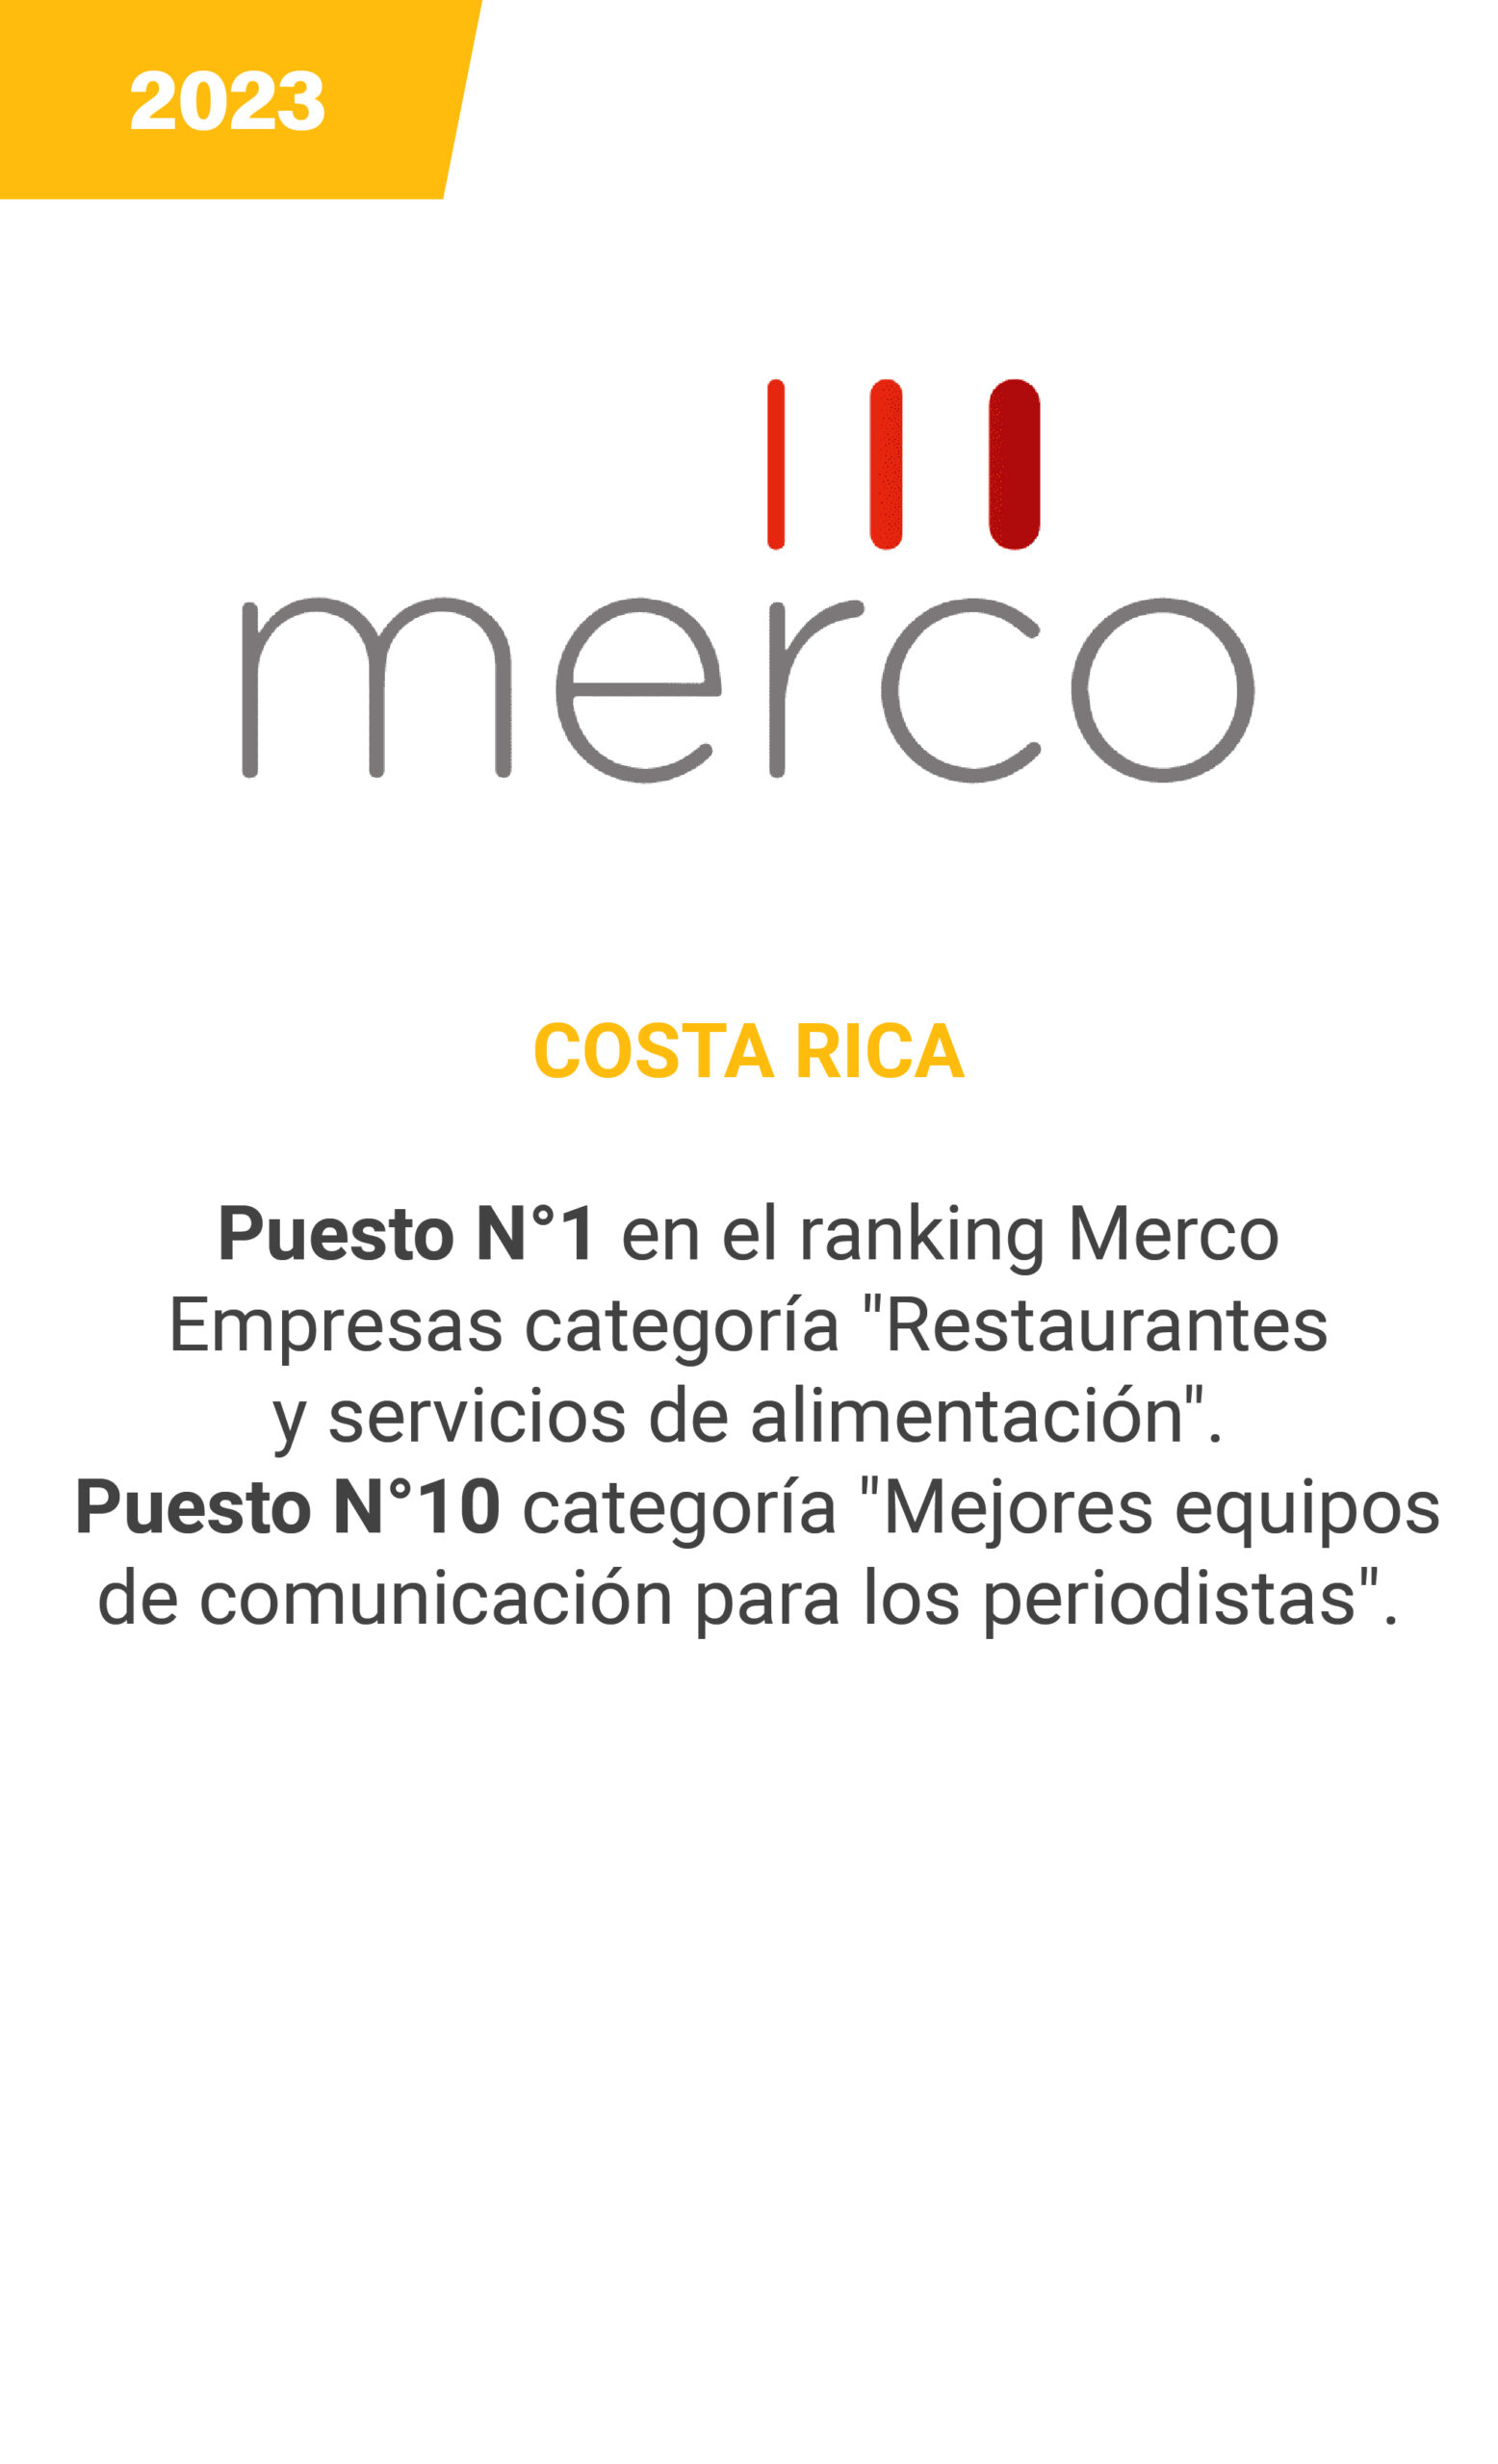 Merco - Costa Rica 2023 - mobile